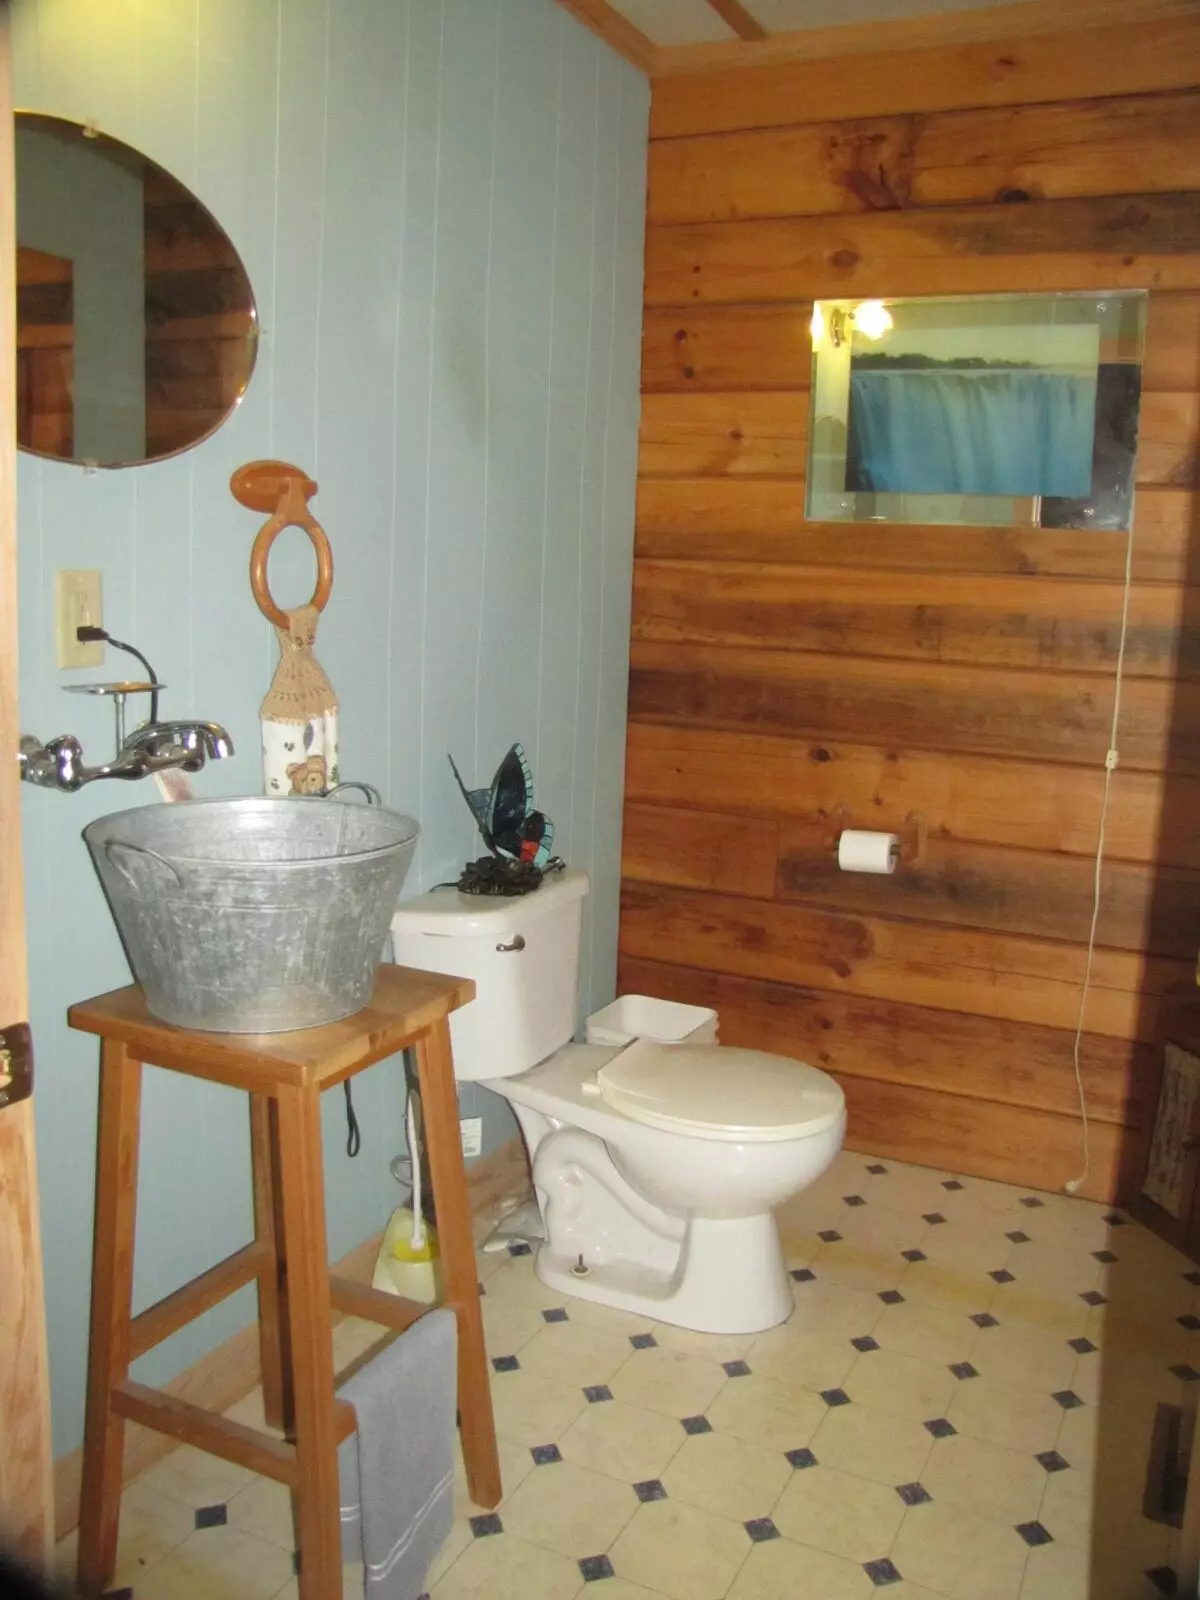 Badkamer in een houten huis (76 foto's): Kamerontwerp in een huis van een bar in het land, voorbeelden van vloerafwerking, ventilatie-regelingen 10475_9